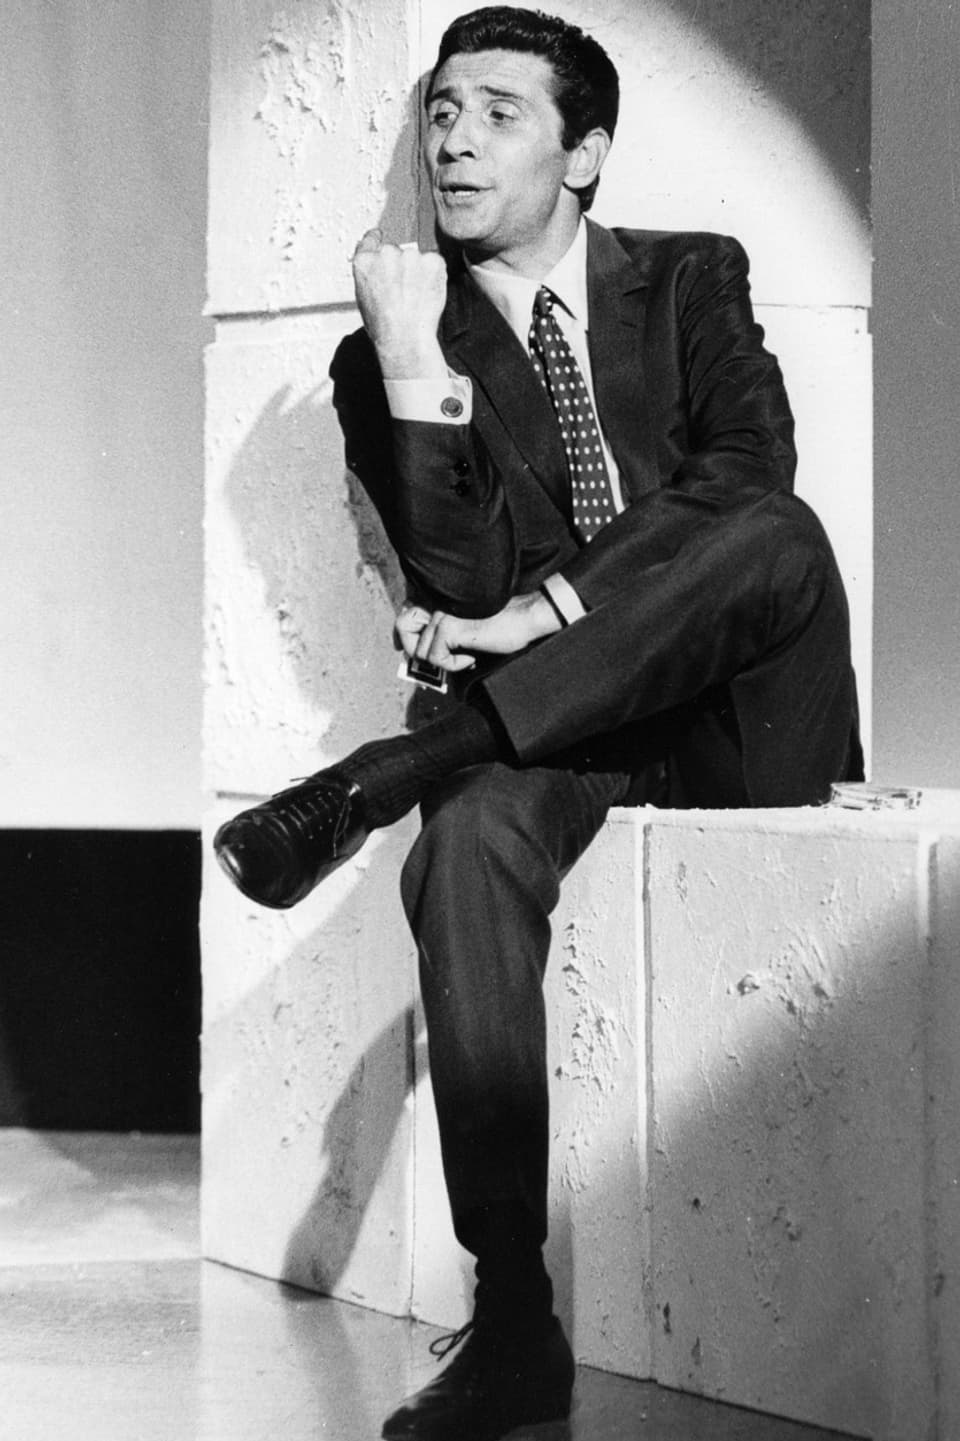 Ein Mann im dunklen Anzug sitzt auf einer weissen Mauer.